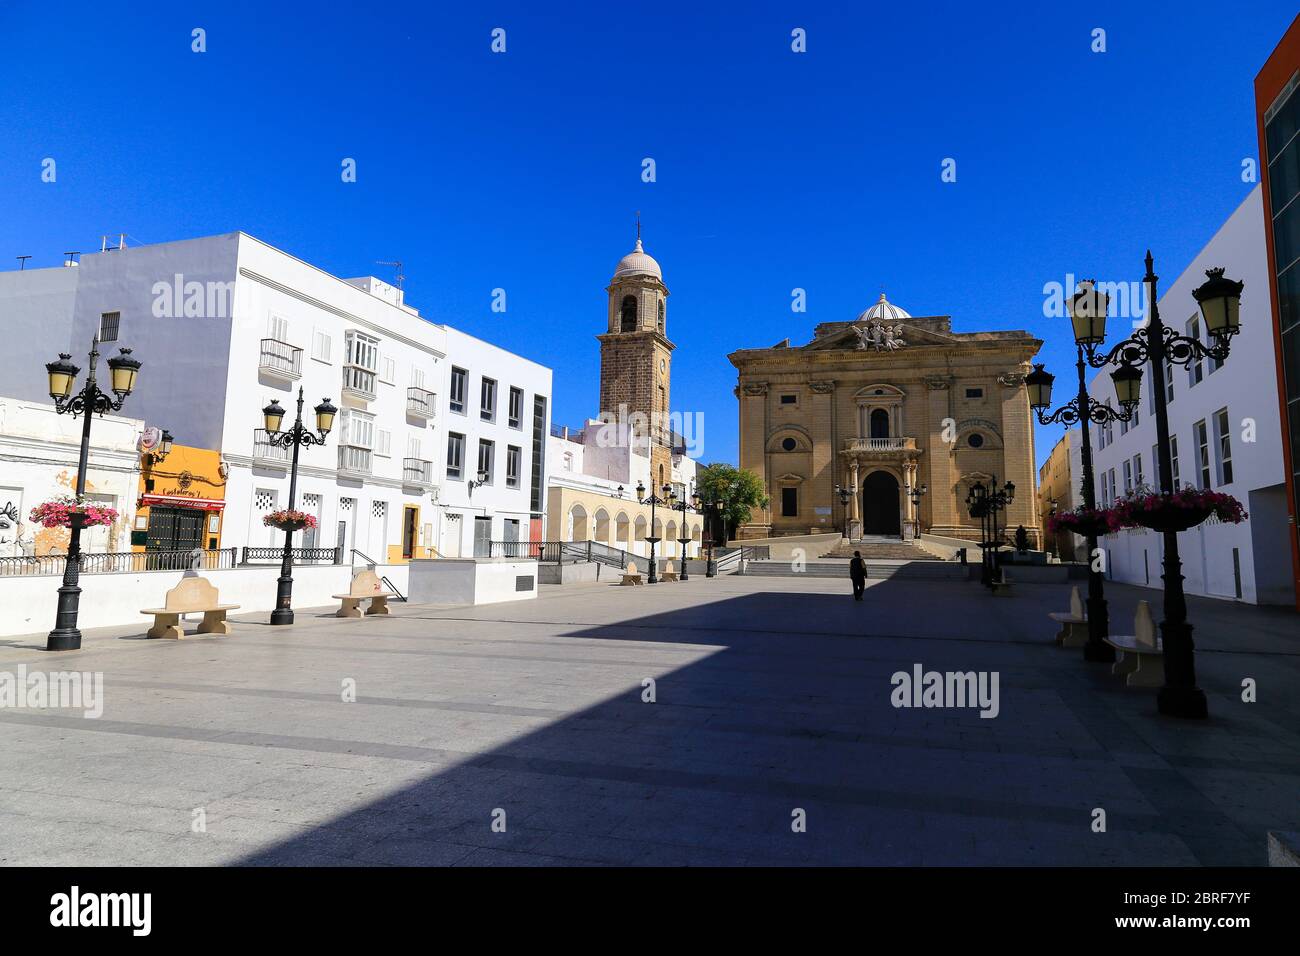 Chiclana de la Frontera, town centre in Huelva province of Spain. Stock Photo